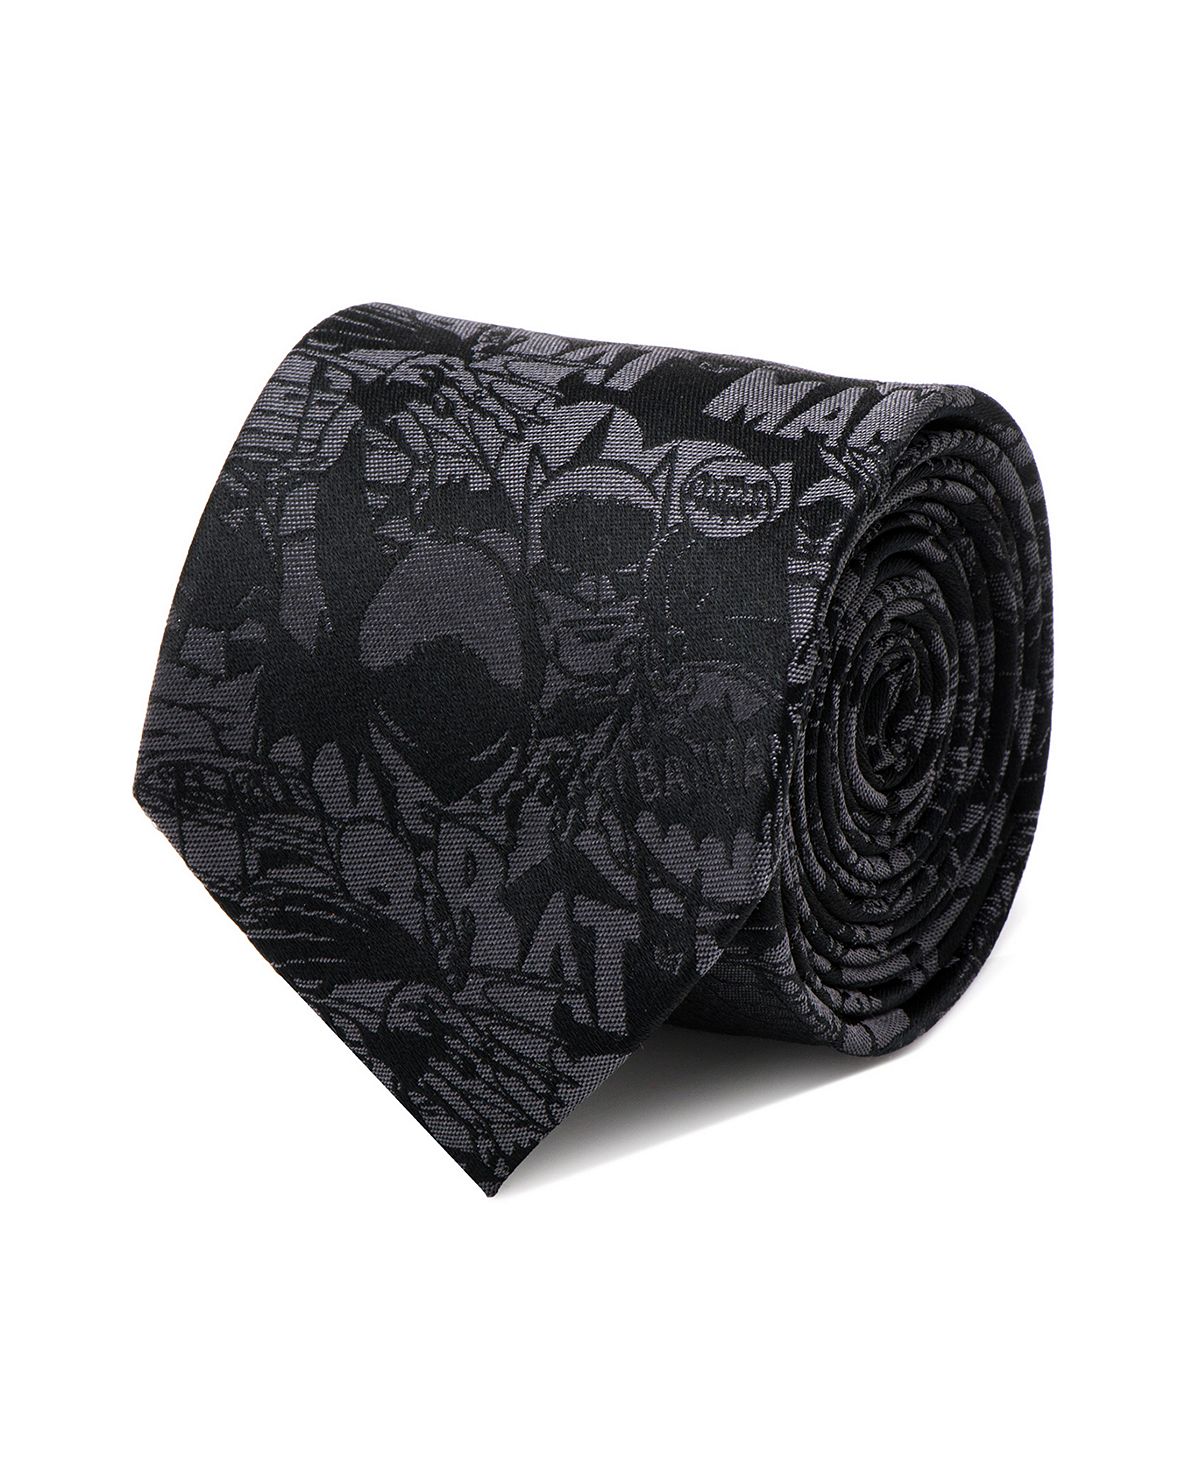 Мужской галстук с комиксами Бэтмен DC Comics галстук черный